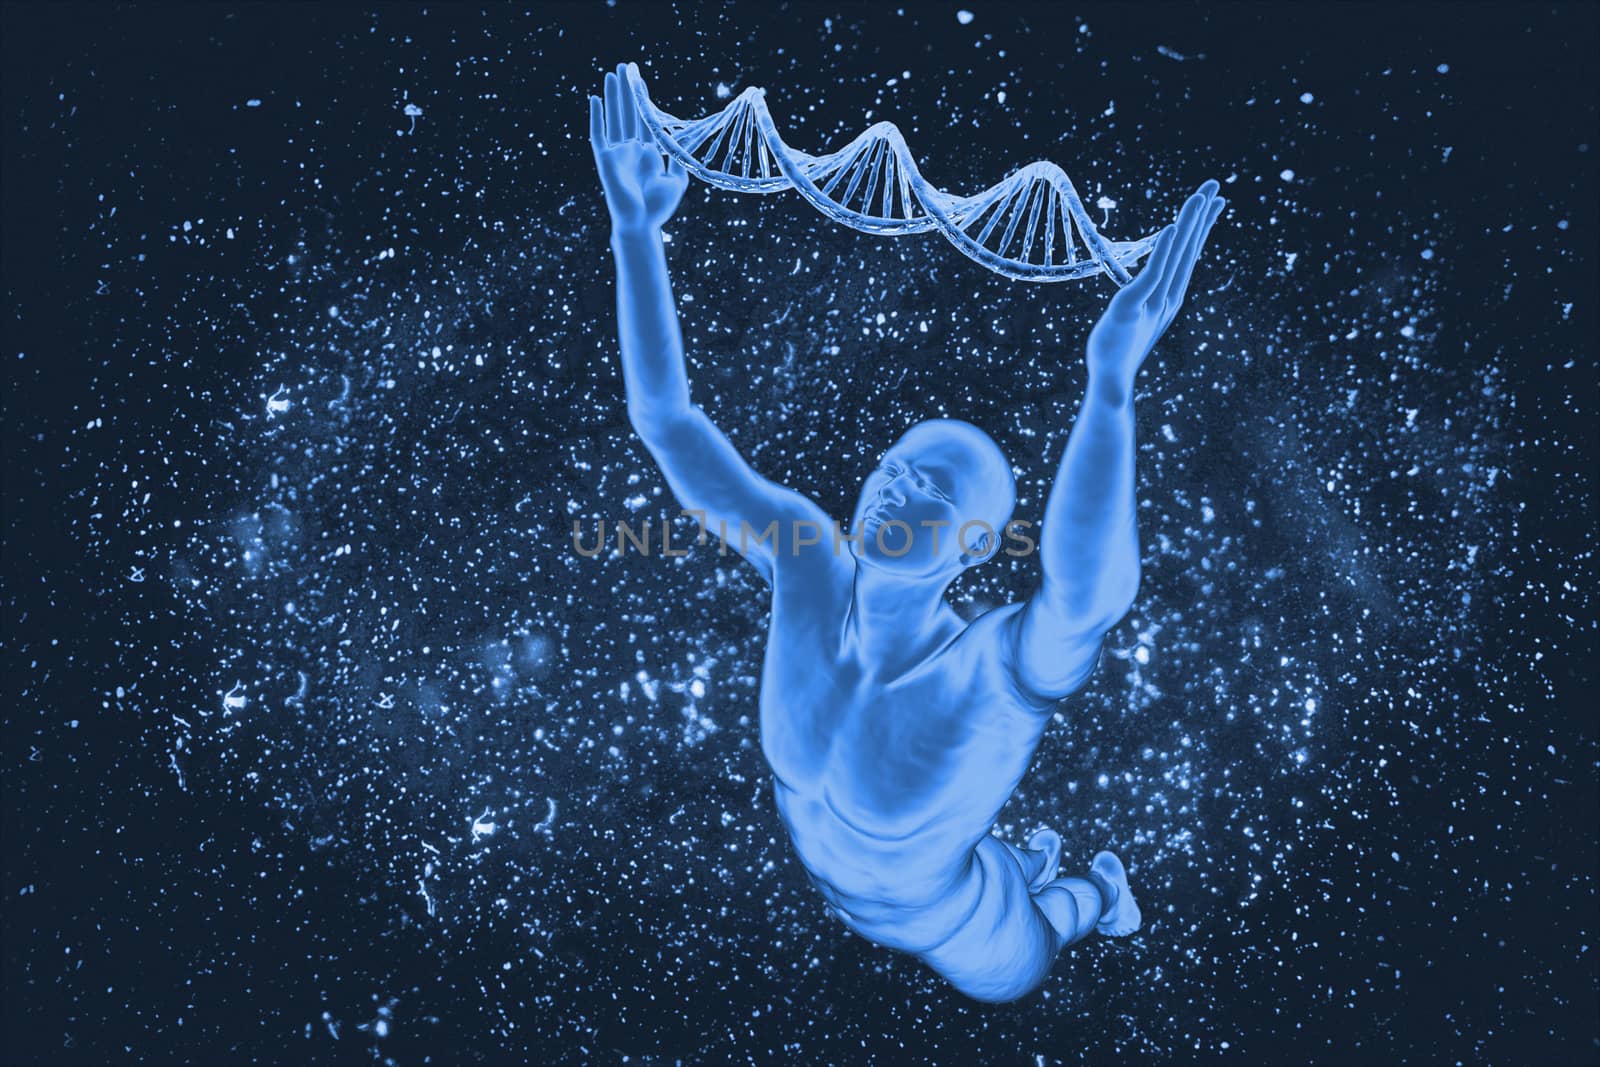 DNA molecules and men